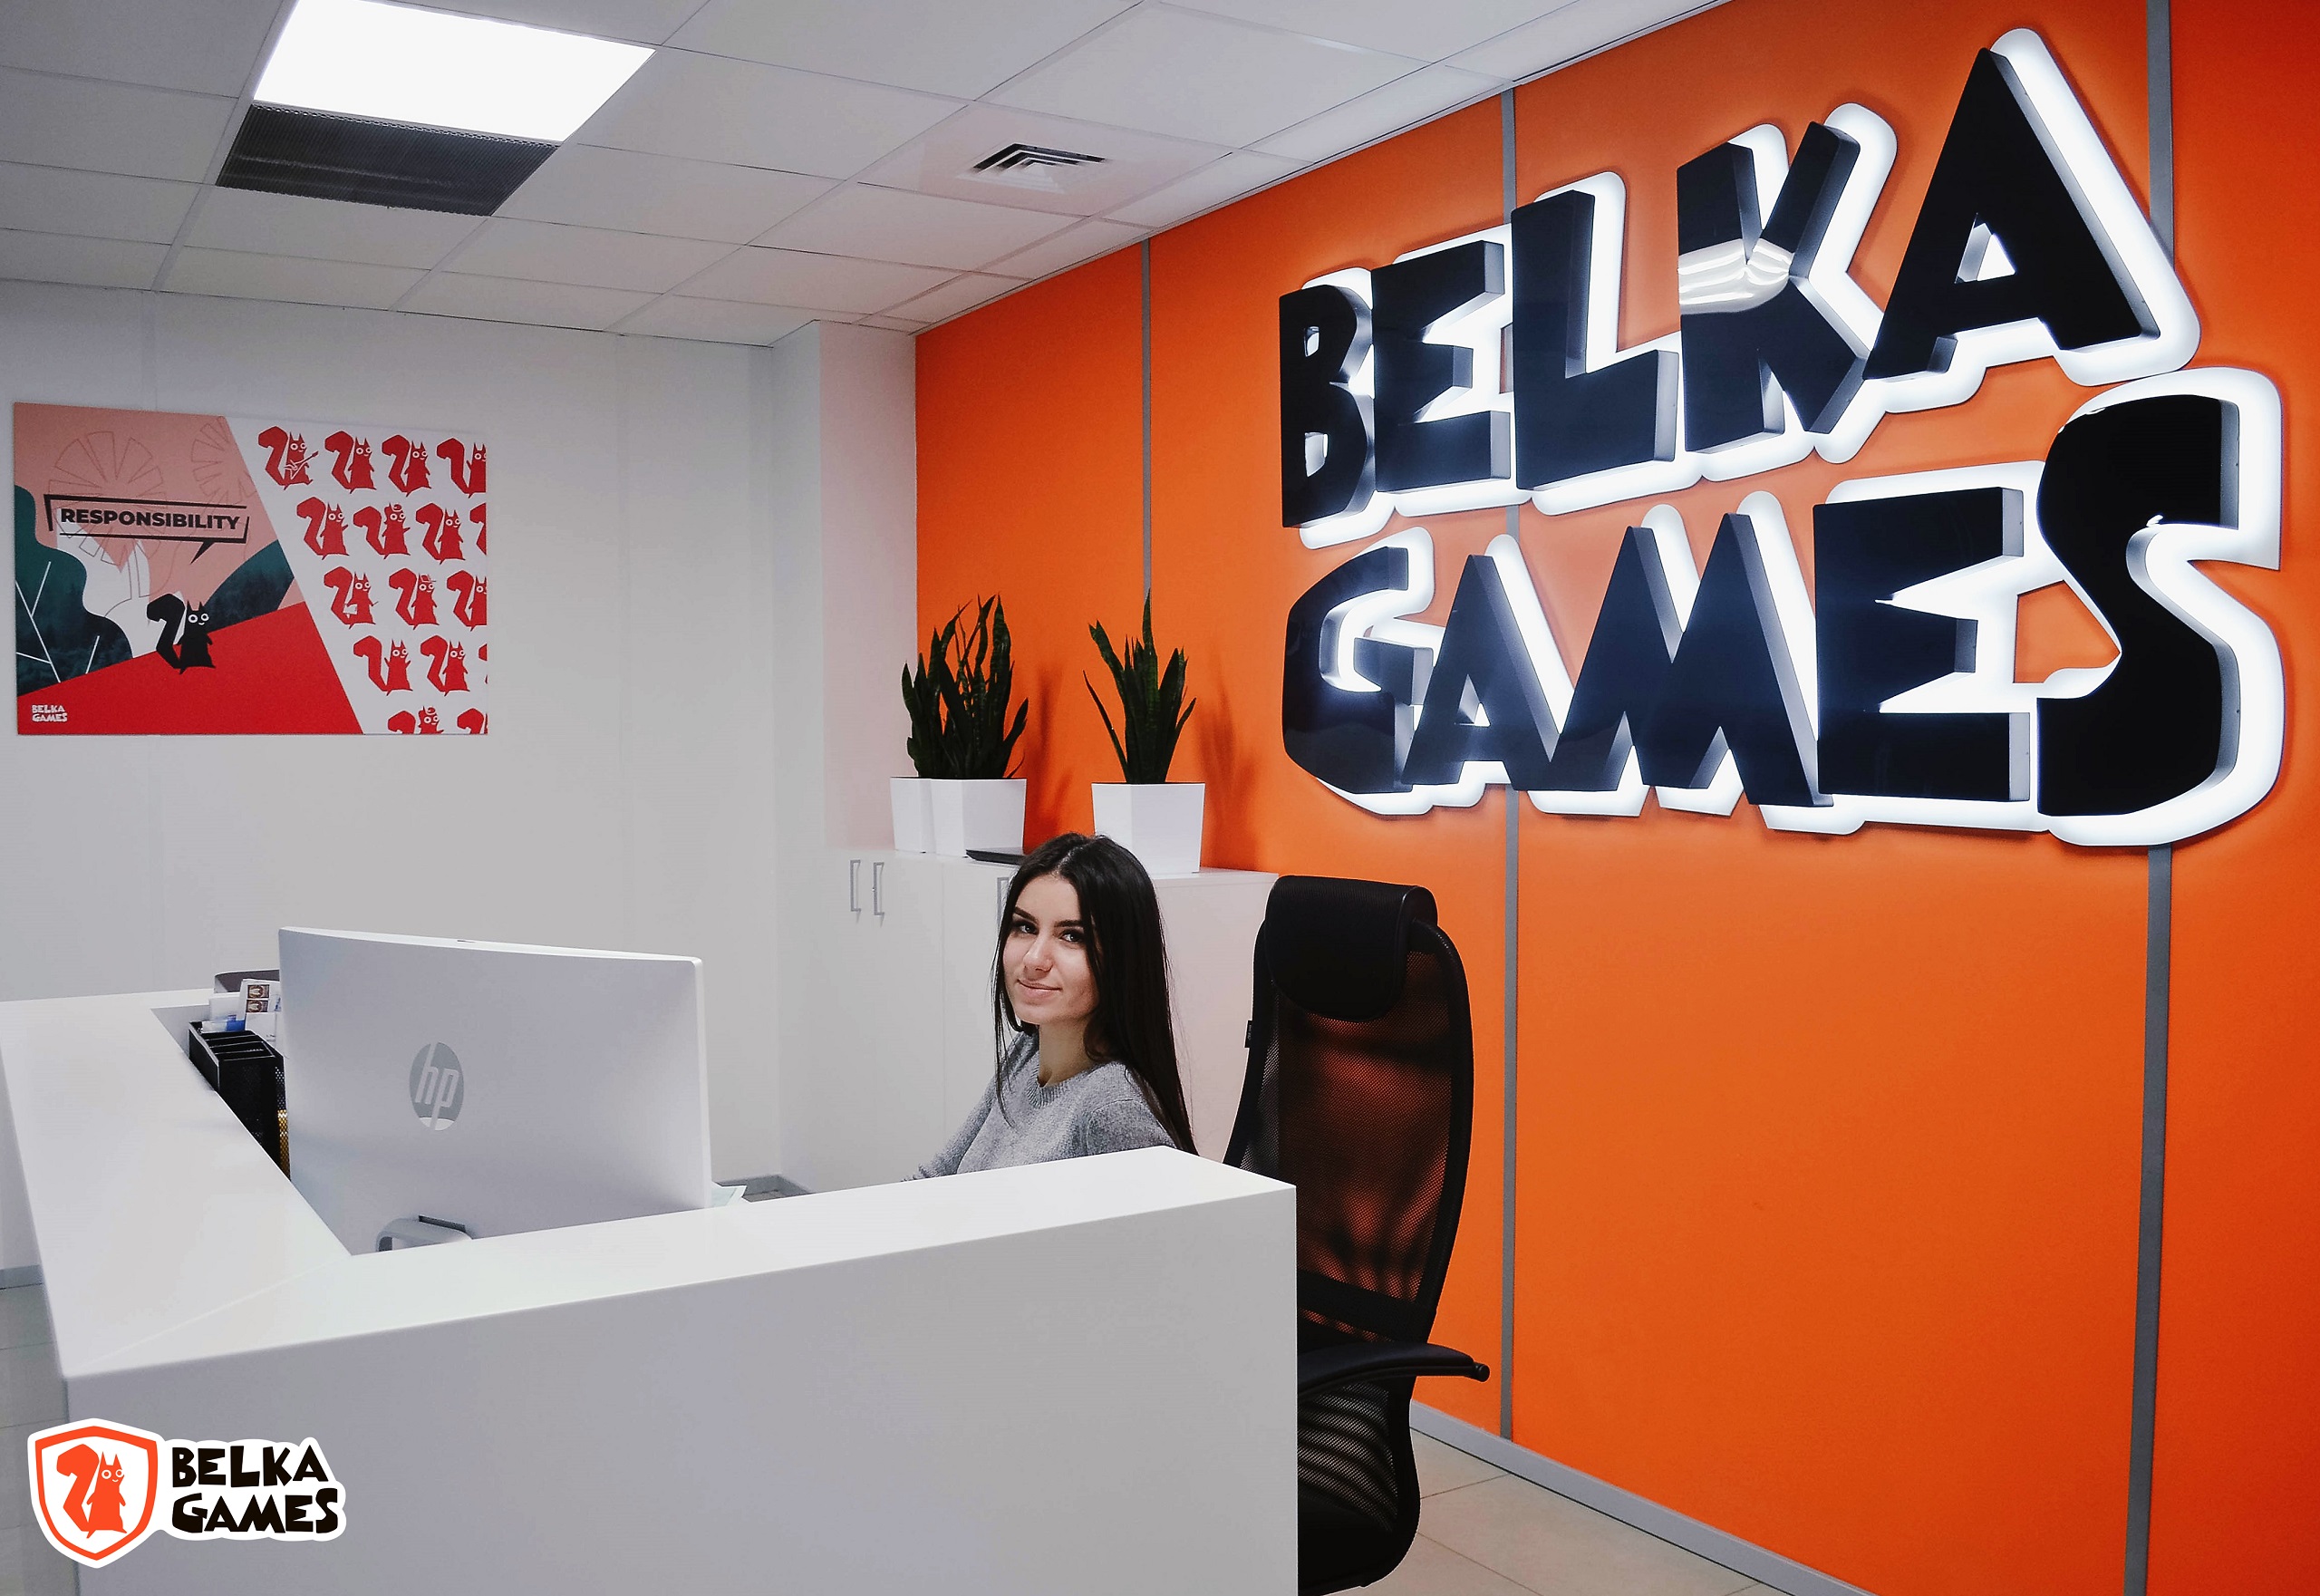 Разработчик с белорусскими корнями Belka Games закрывает российский офис